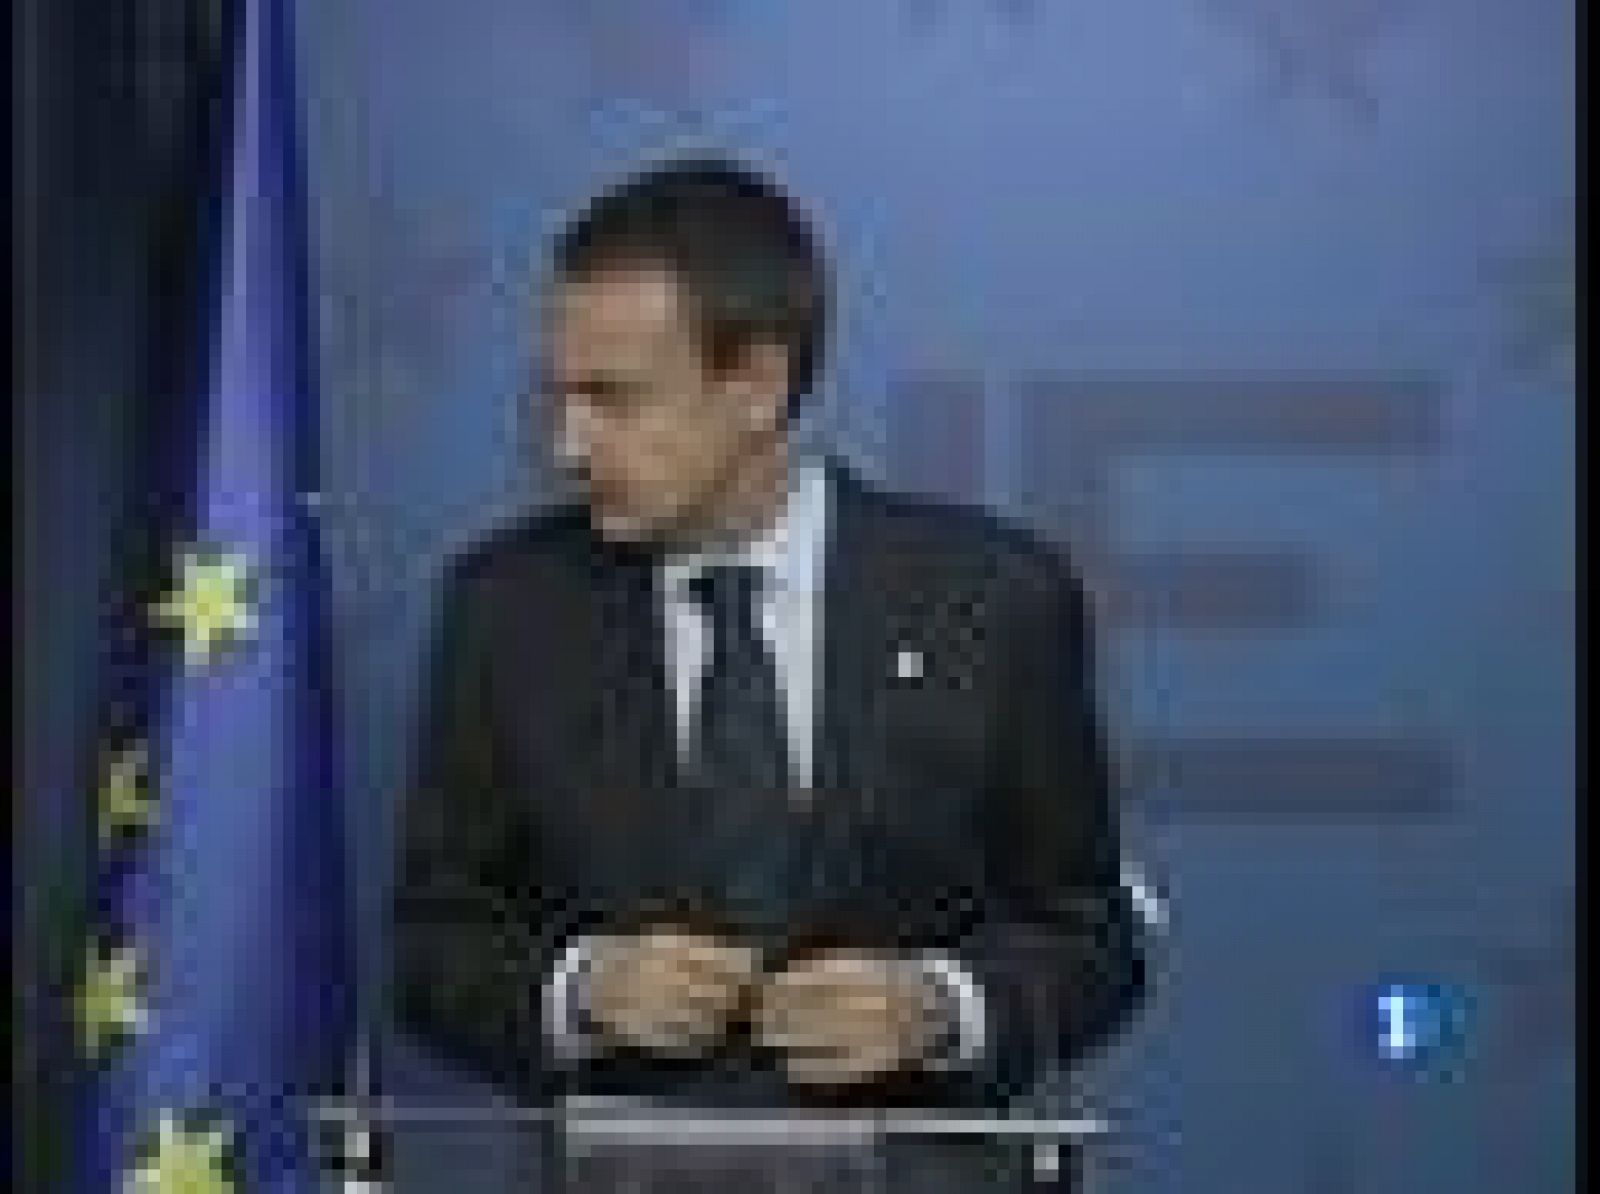 El Presidente del Gobierno, José Luis Rodríguez Zapatero, ha asegurado que los acuerdos a los que se ha llegado en la Cumbre de Bruselas son buenos para España y para Europa.